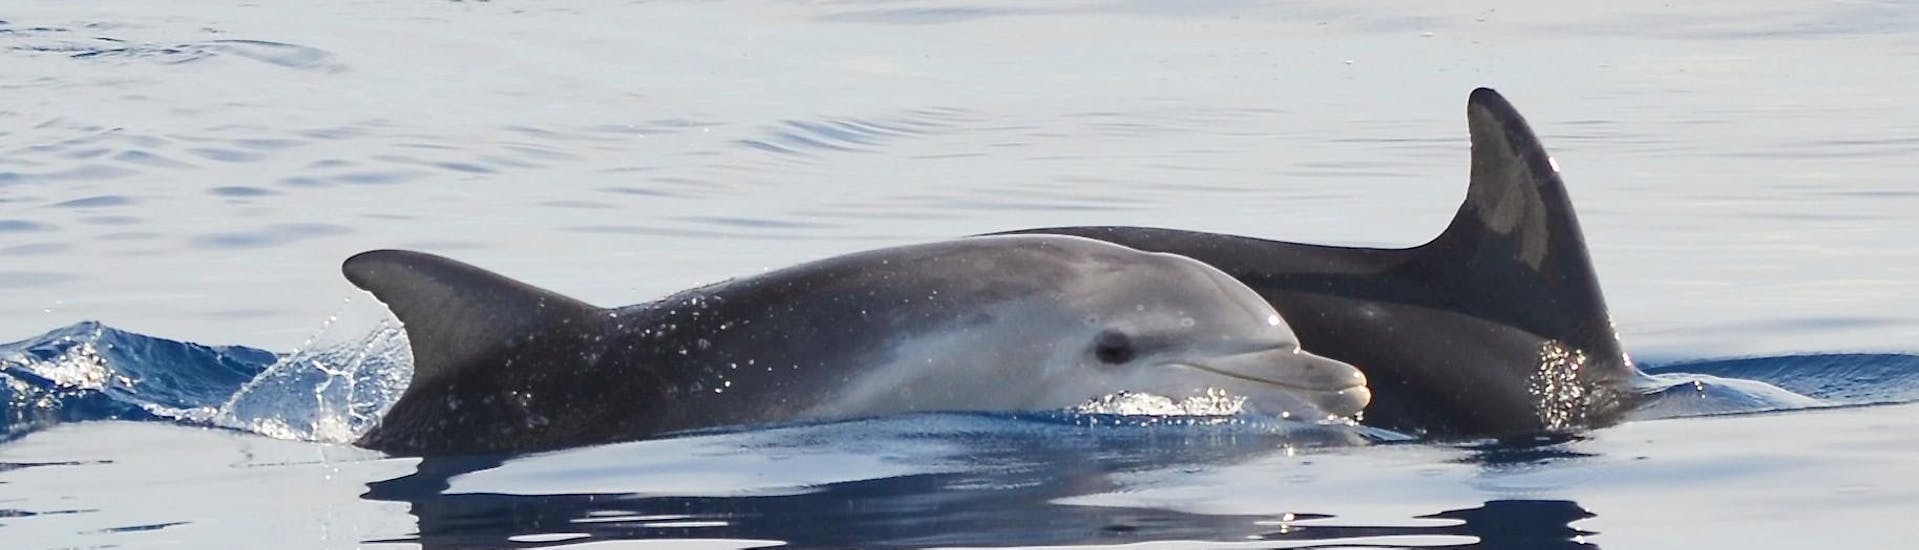 De mooie en nieuwsgierige dolfijnen die we misschien zullen zien tijdens de boottocht met dolfijnen spotten in Alghero met Progetto Natura Alghero.